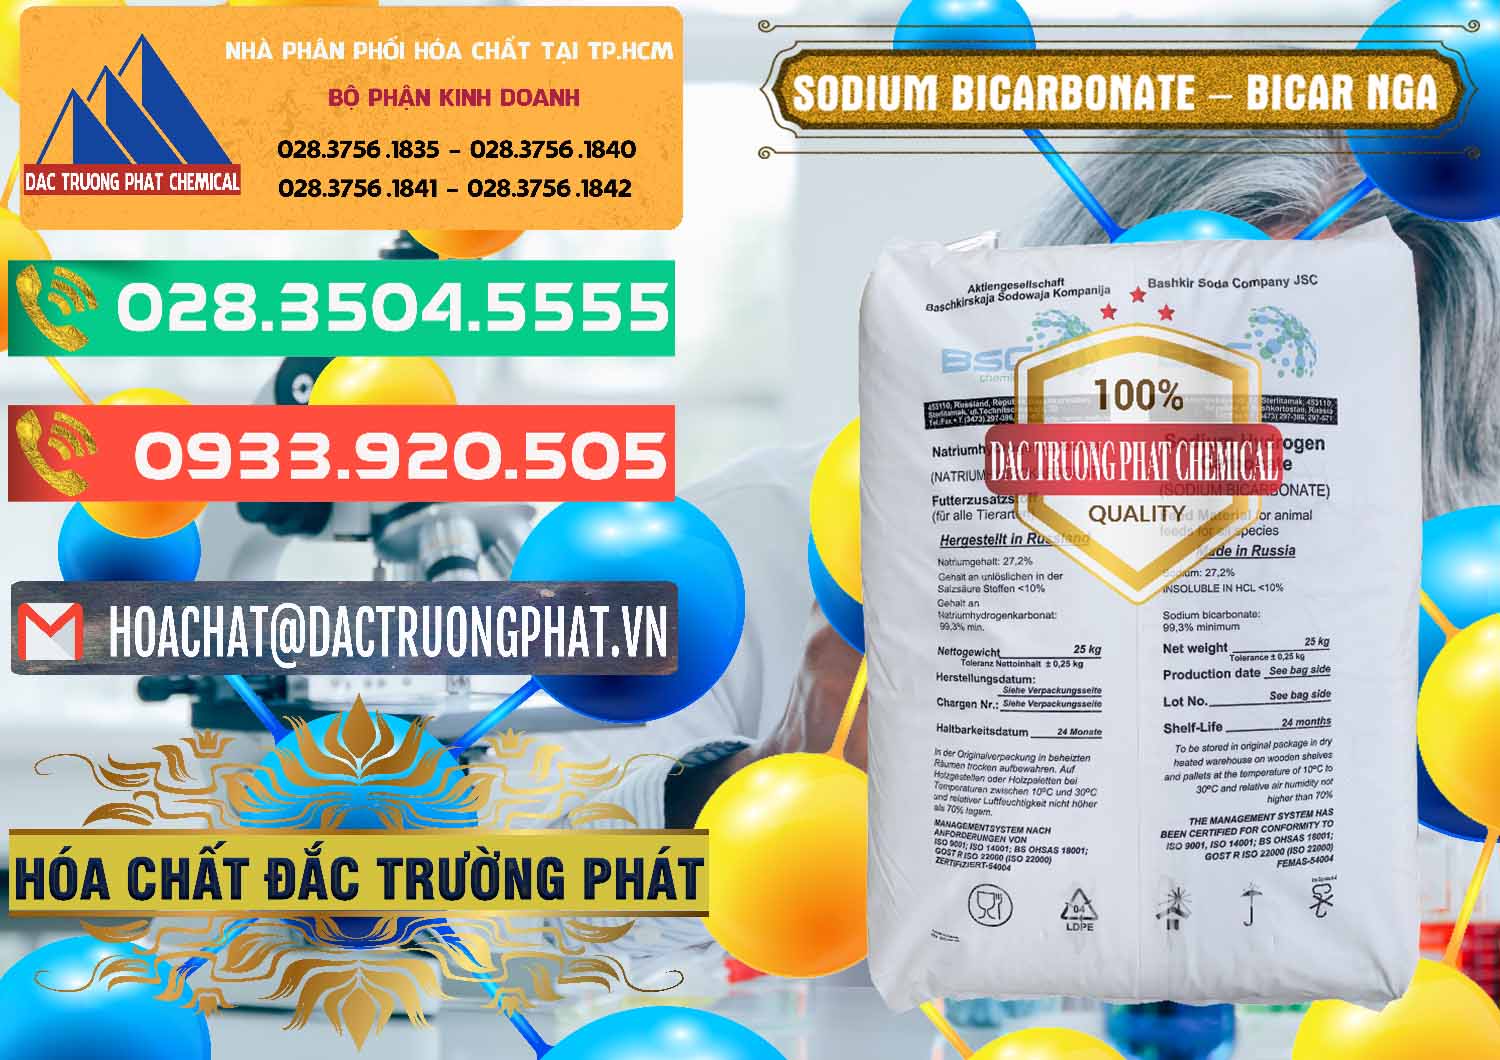 Chuyên bán & phân phối Sodium Bicarbonate – Bicar NaHCO3 Nga Russia - 0425 - Cung cấp & bán hóa chất tại TP.HCM - congtyhoachat.com.vn